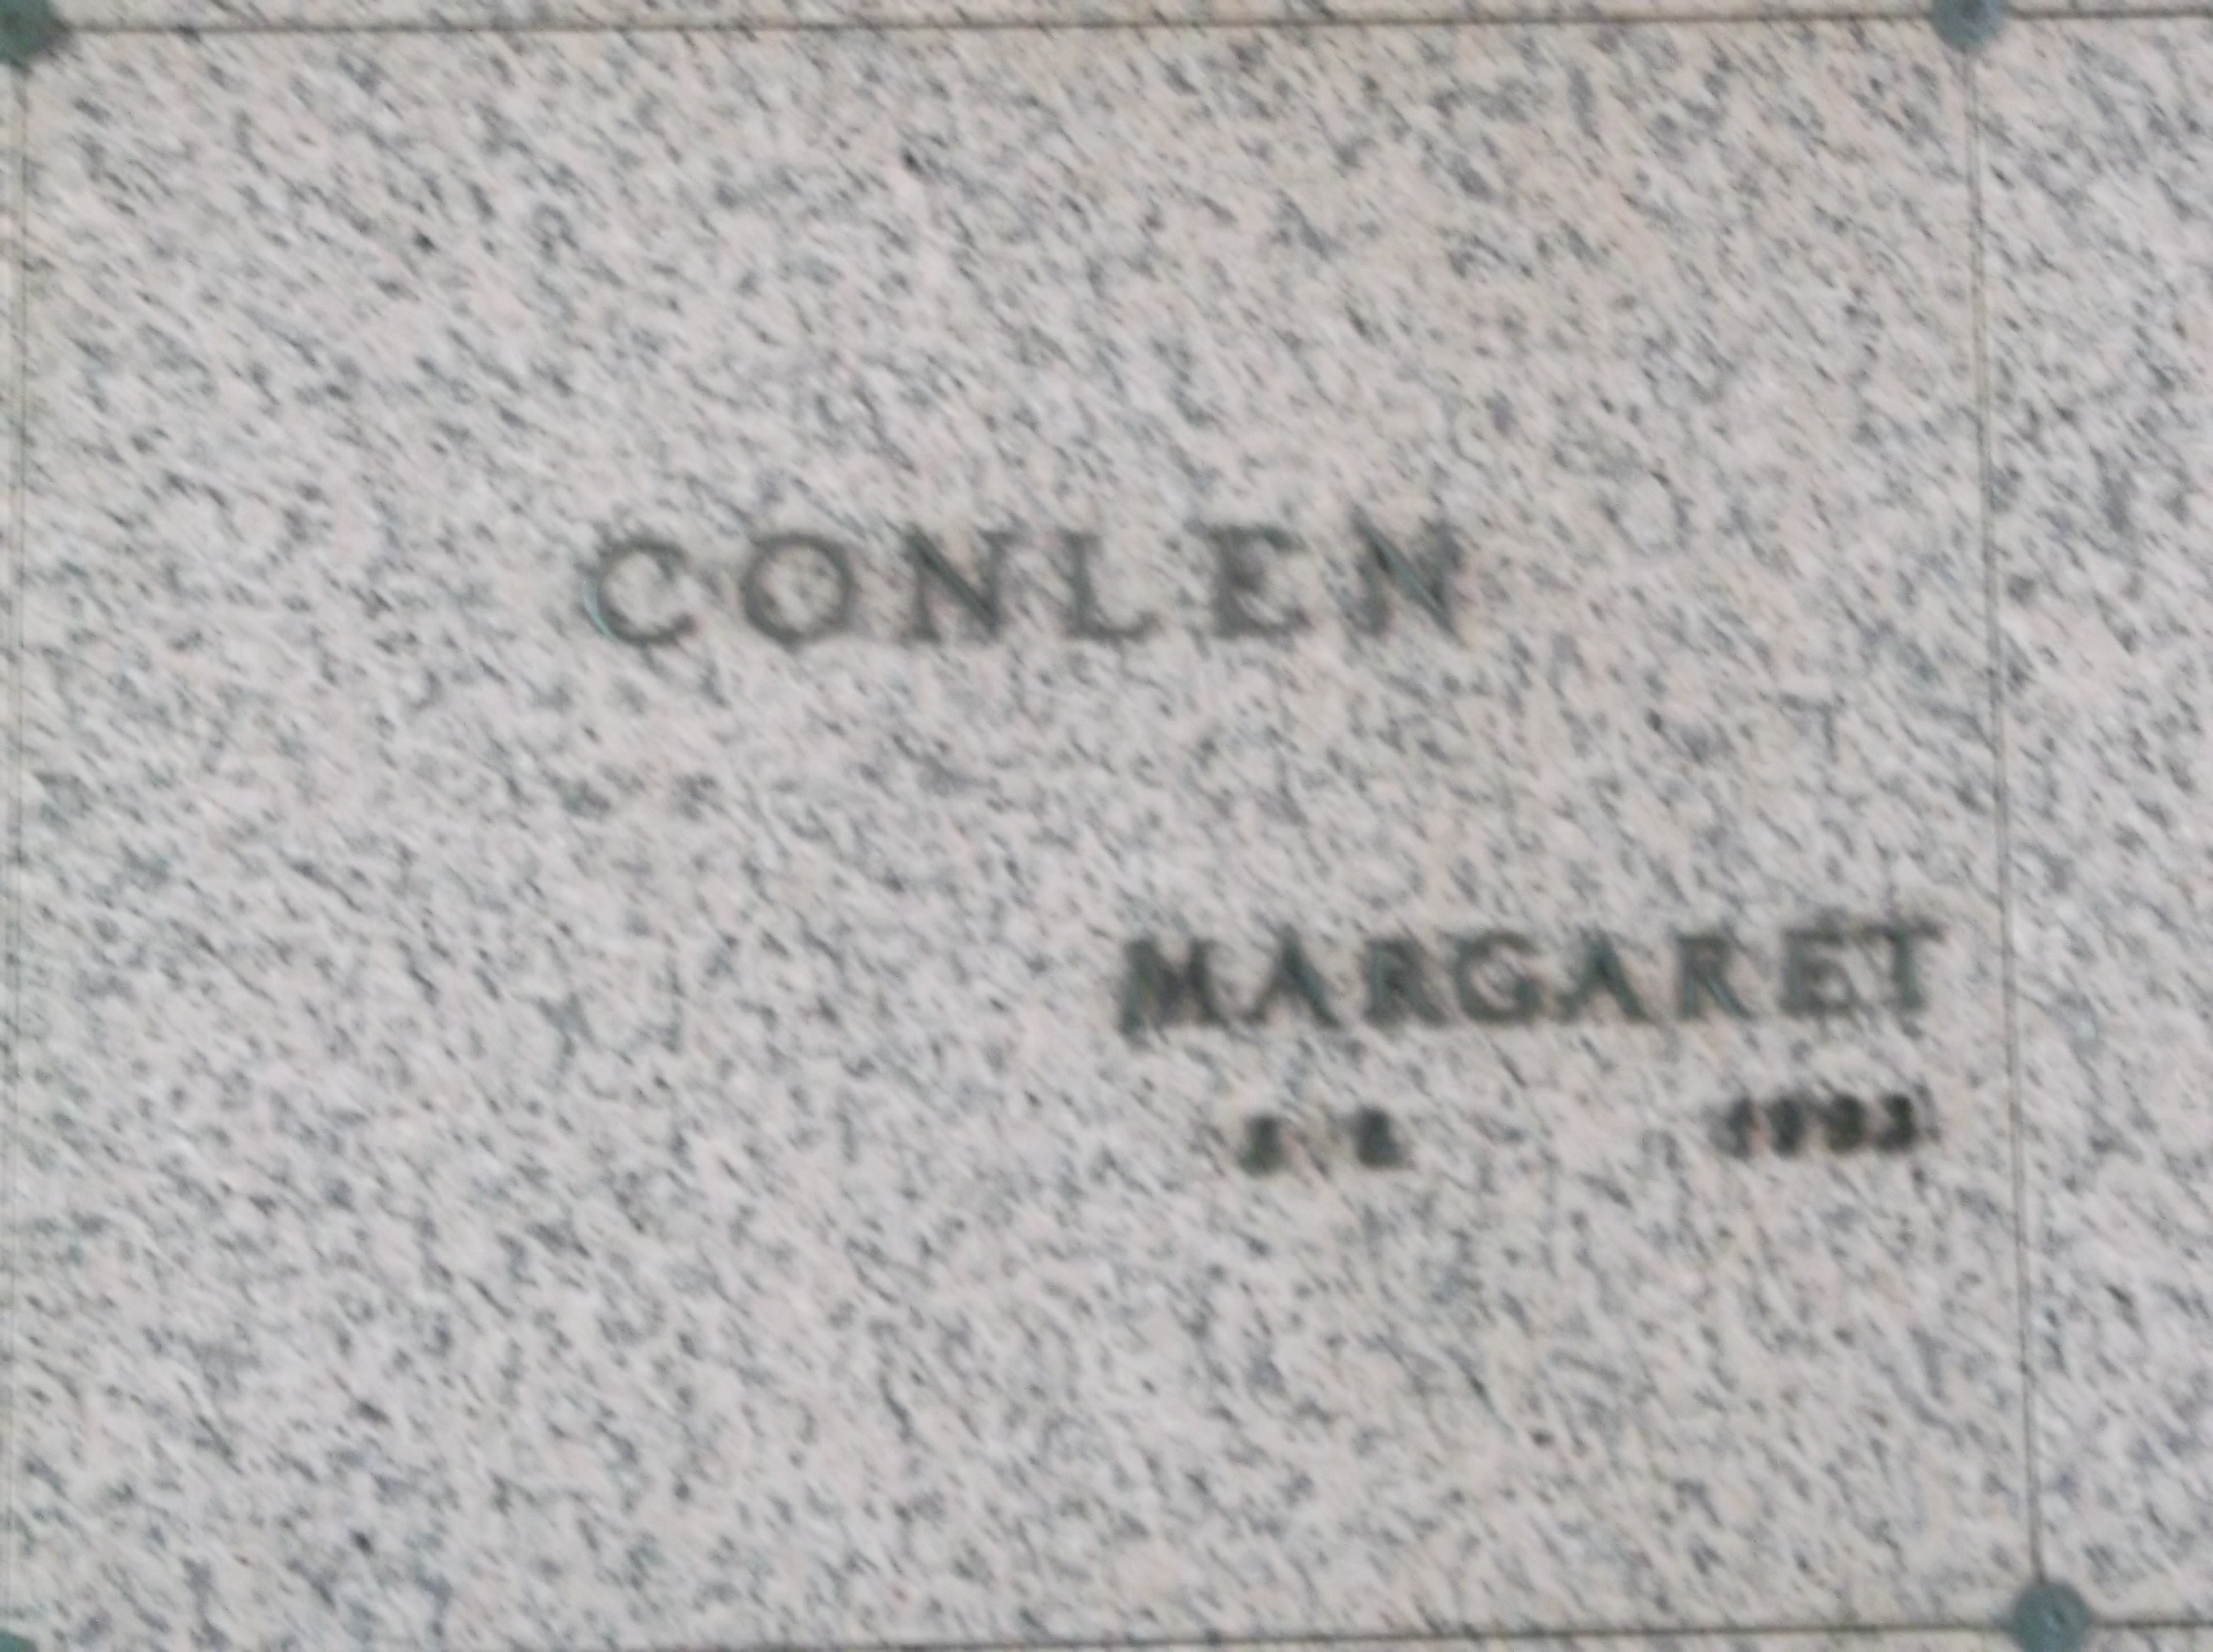 Margaret Conlen